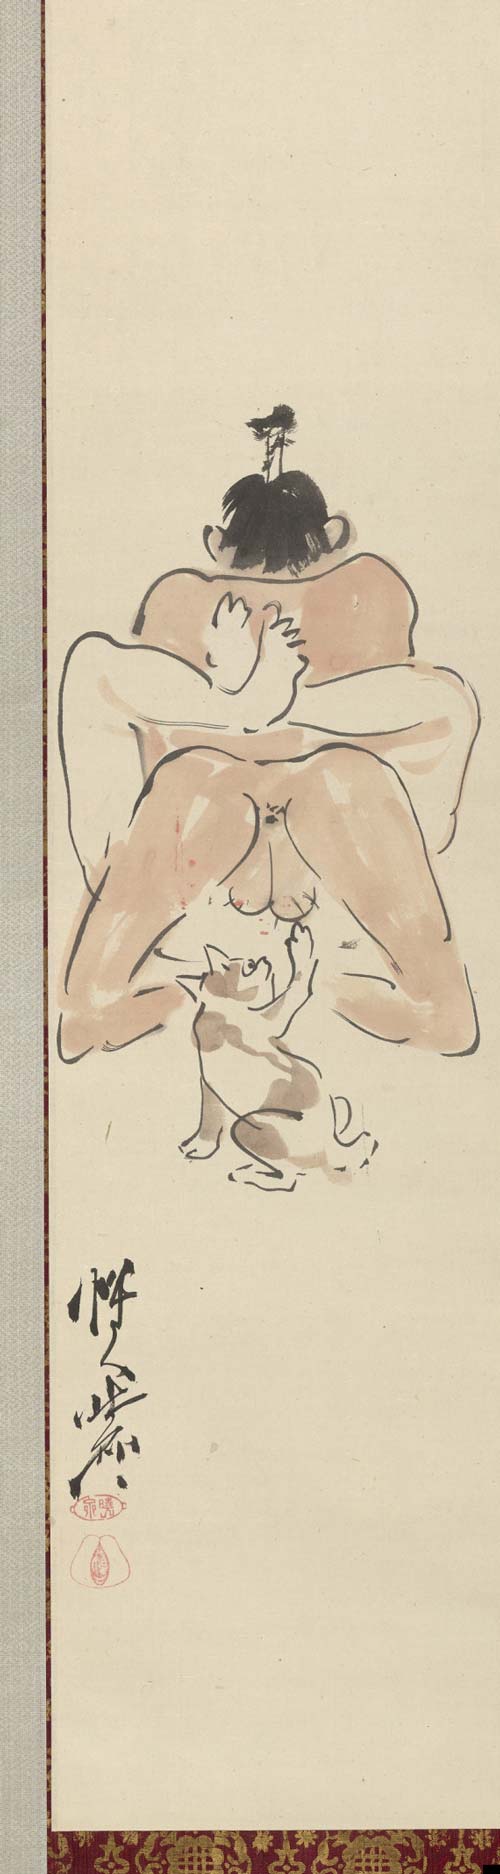 Эротические гравюры Пикассо в Берне | Новости Швейцарии на русском